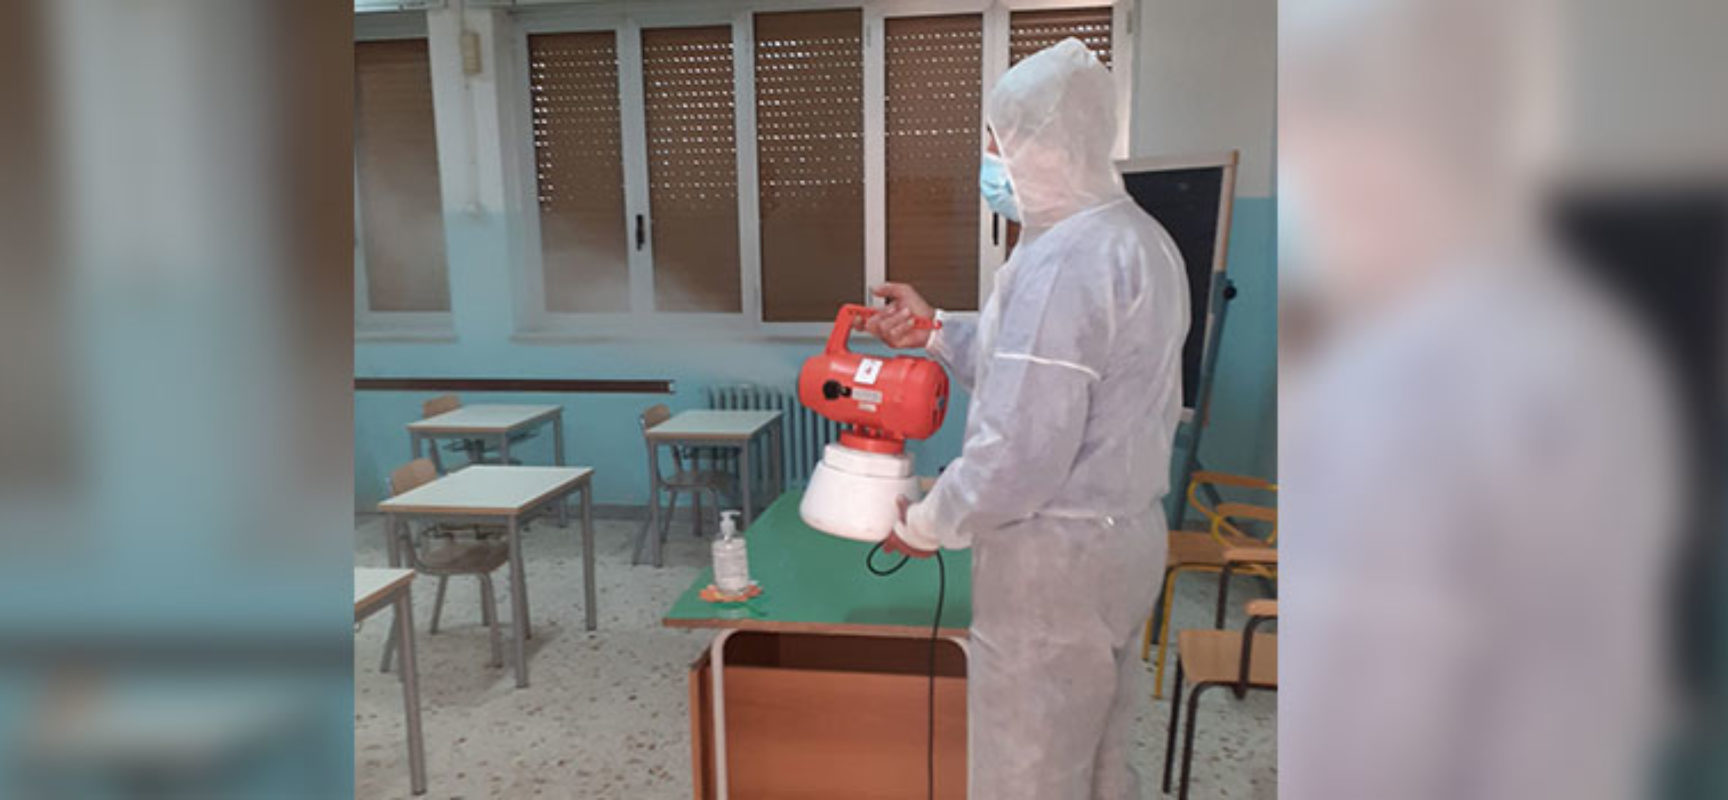 Angarano: “In scuole di competenza comunale effettuate sanificazione e preriscaldamento” / FOTO